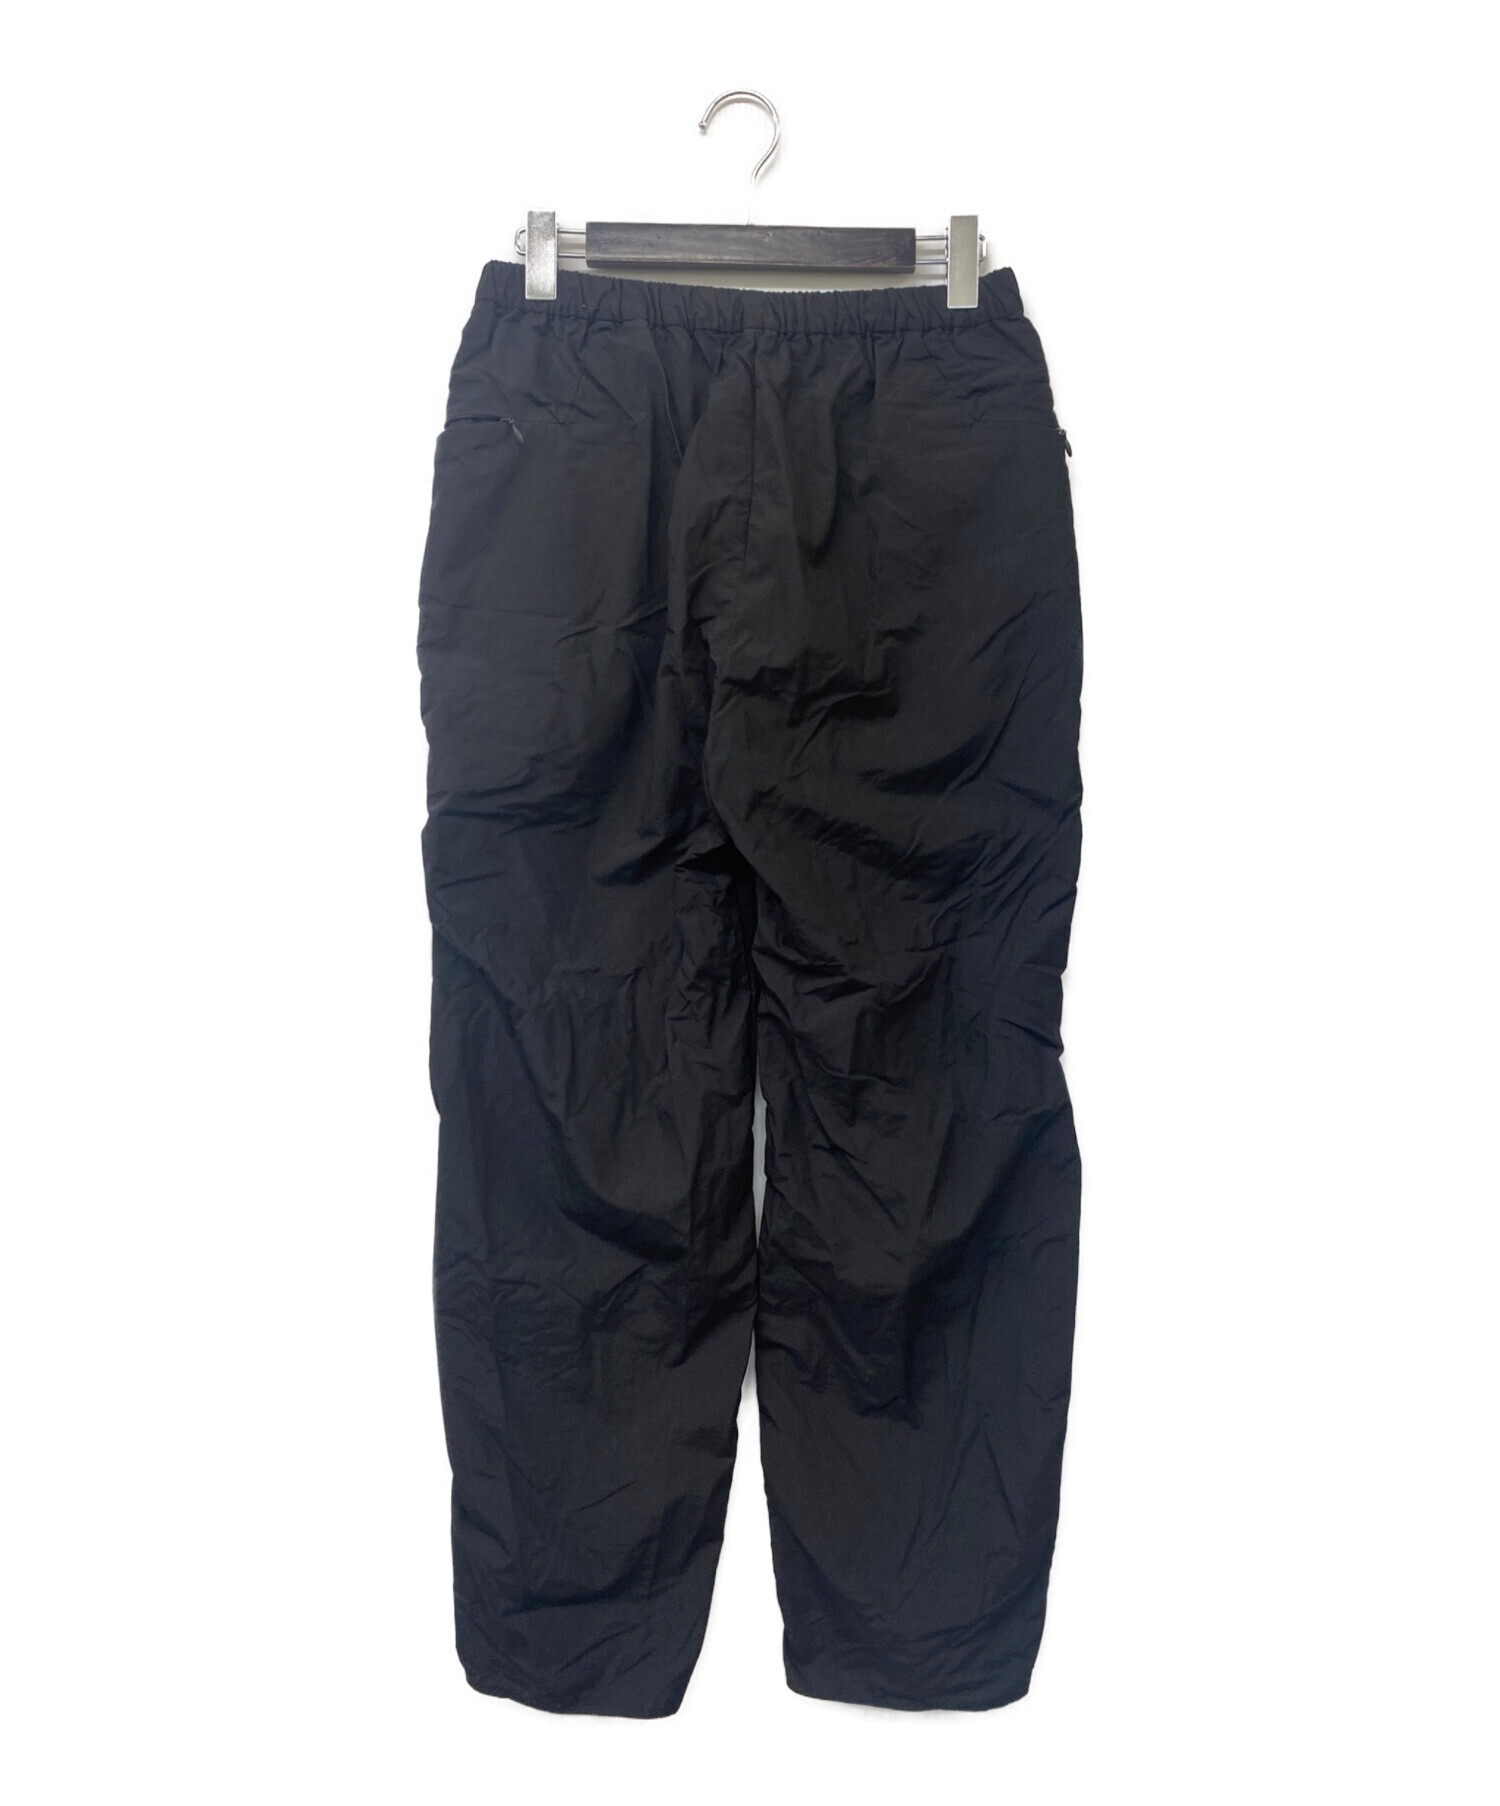 TEATORA (テアトラ) Wallet Pants Packable ウォレットパンツ パッカブル ナイロンパンツ ブラック サイズ:4